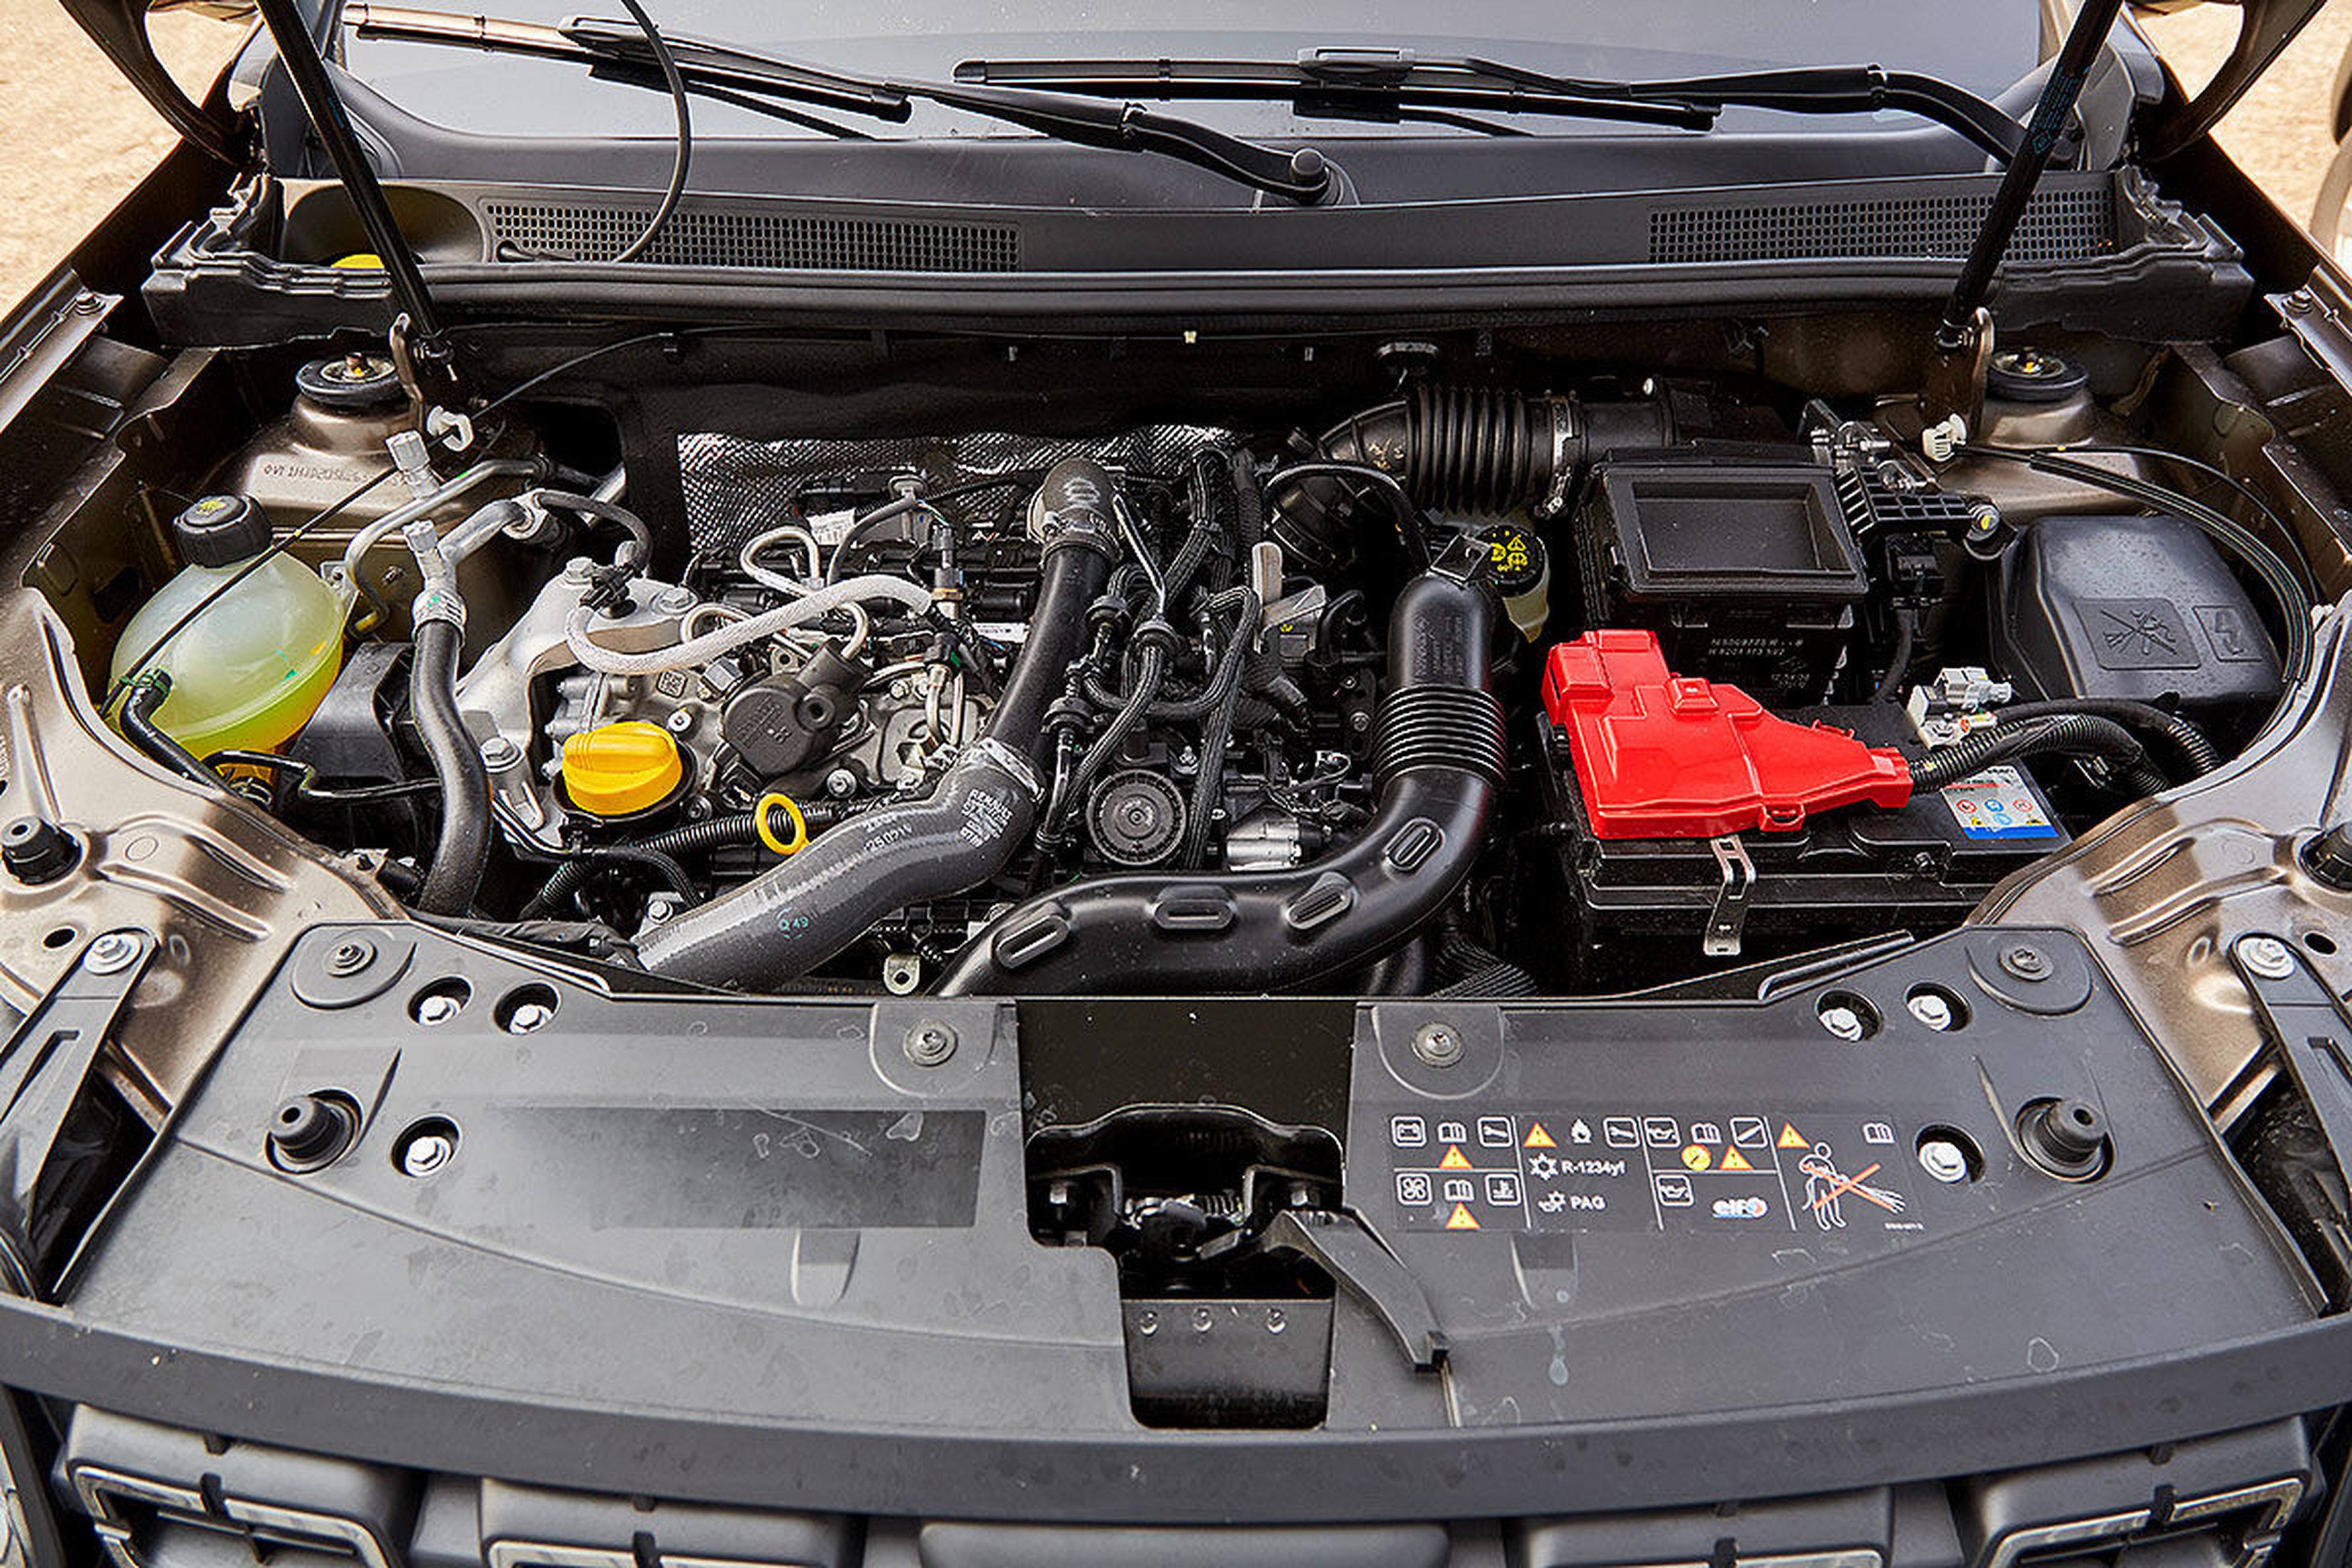 El motor "Mercedes" del Dacia Duster le ha hecho subir un par de escalones en placer de conducción